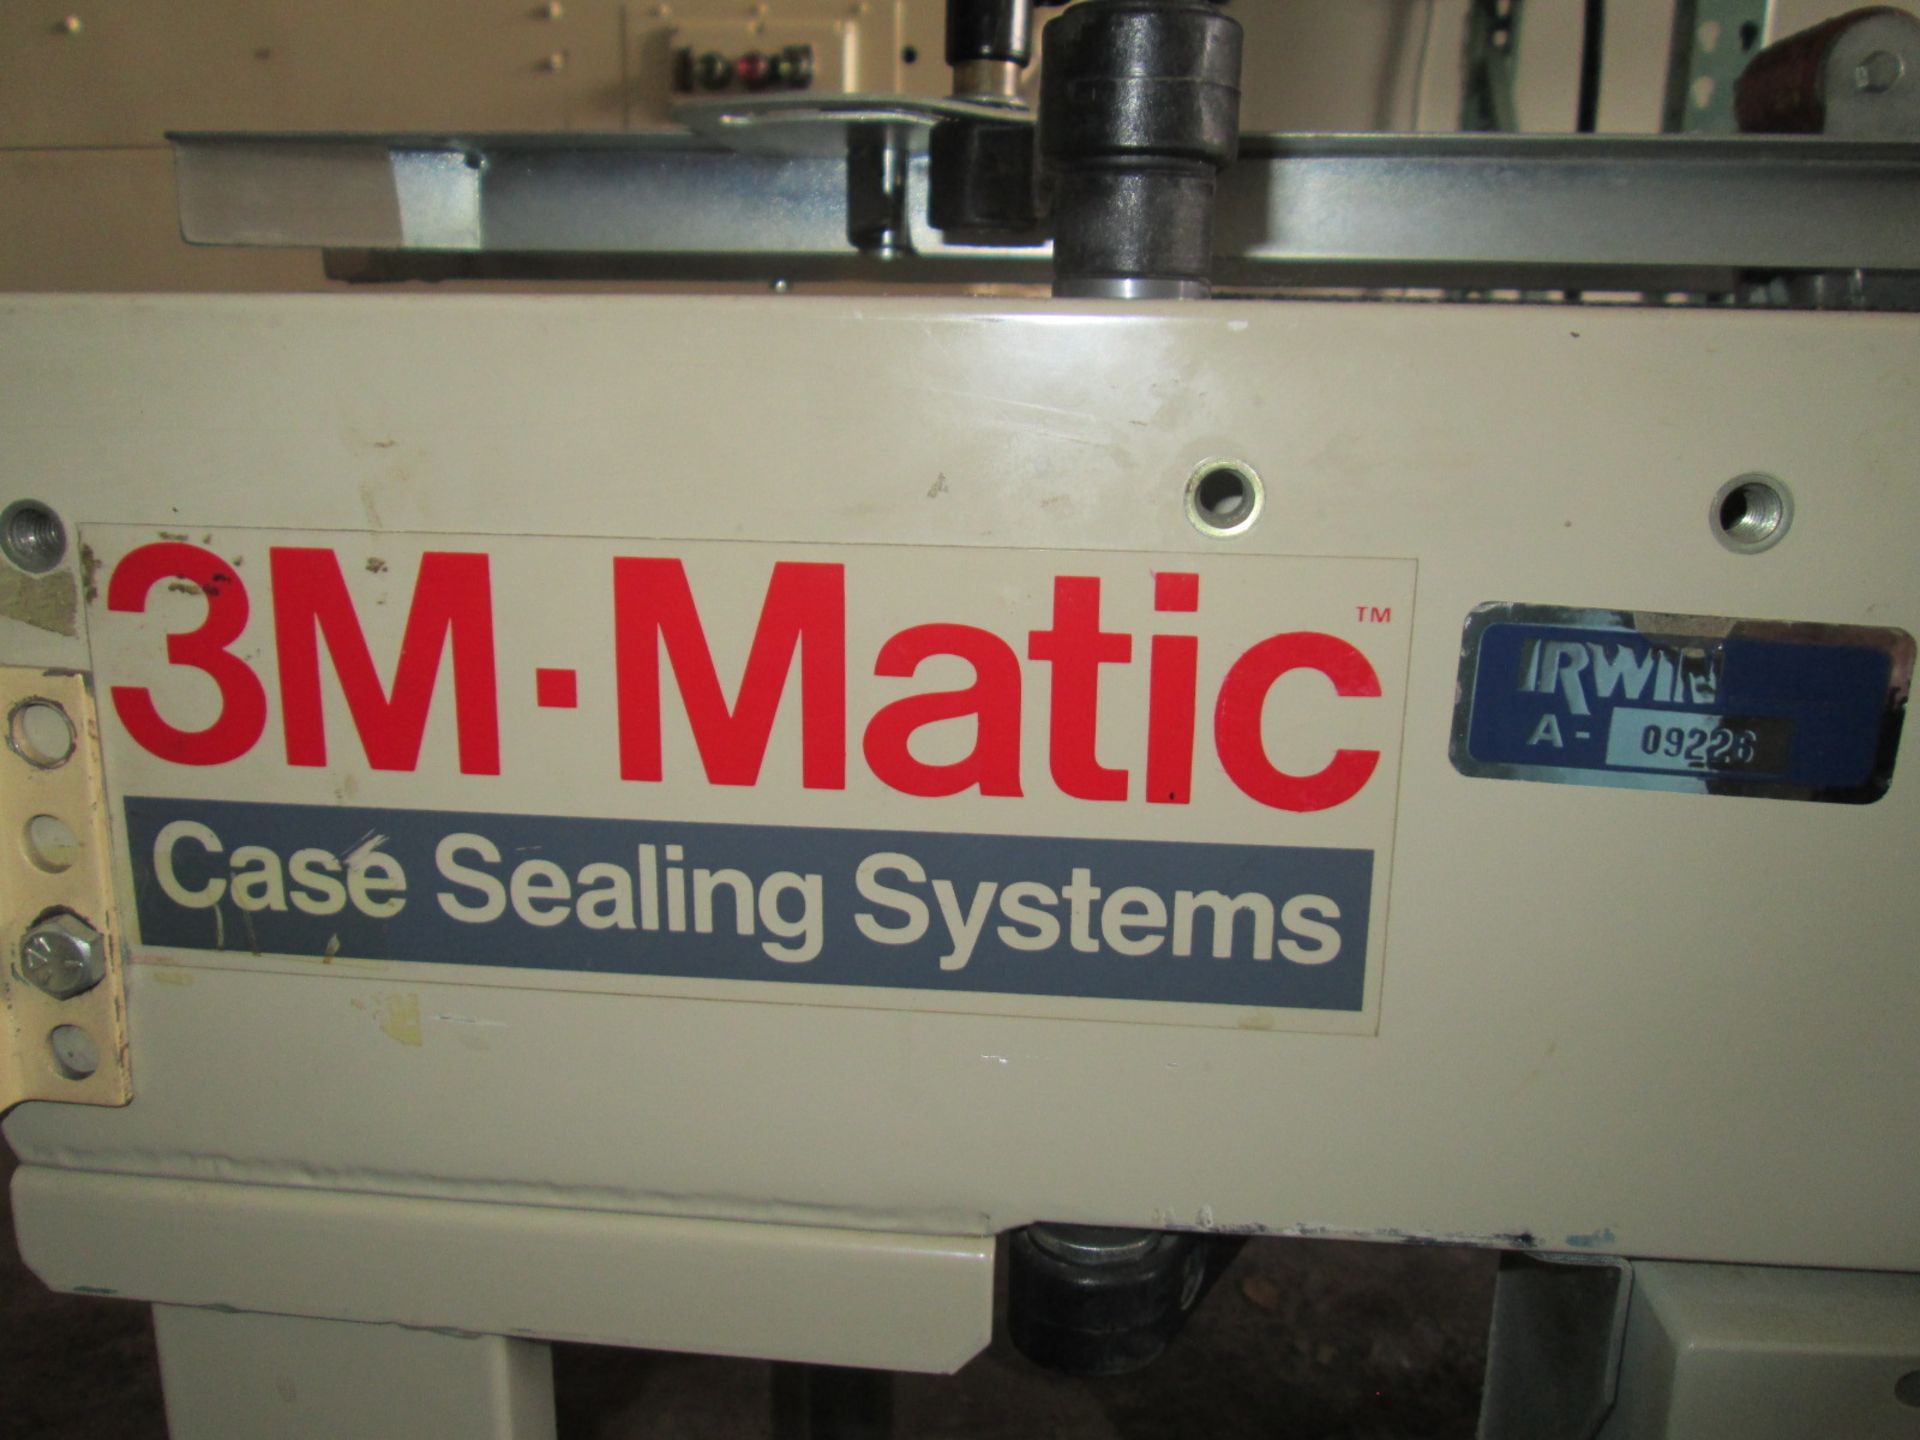 3M-Matic 22A Adjustable Case Sealer, Model 28600, Serial Number 9276, 115v, Top and Bottom Sealer, - Image 12 of 14